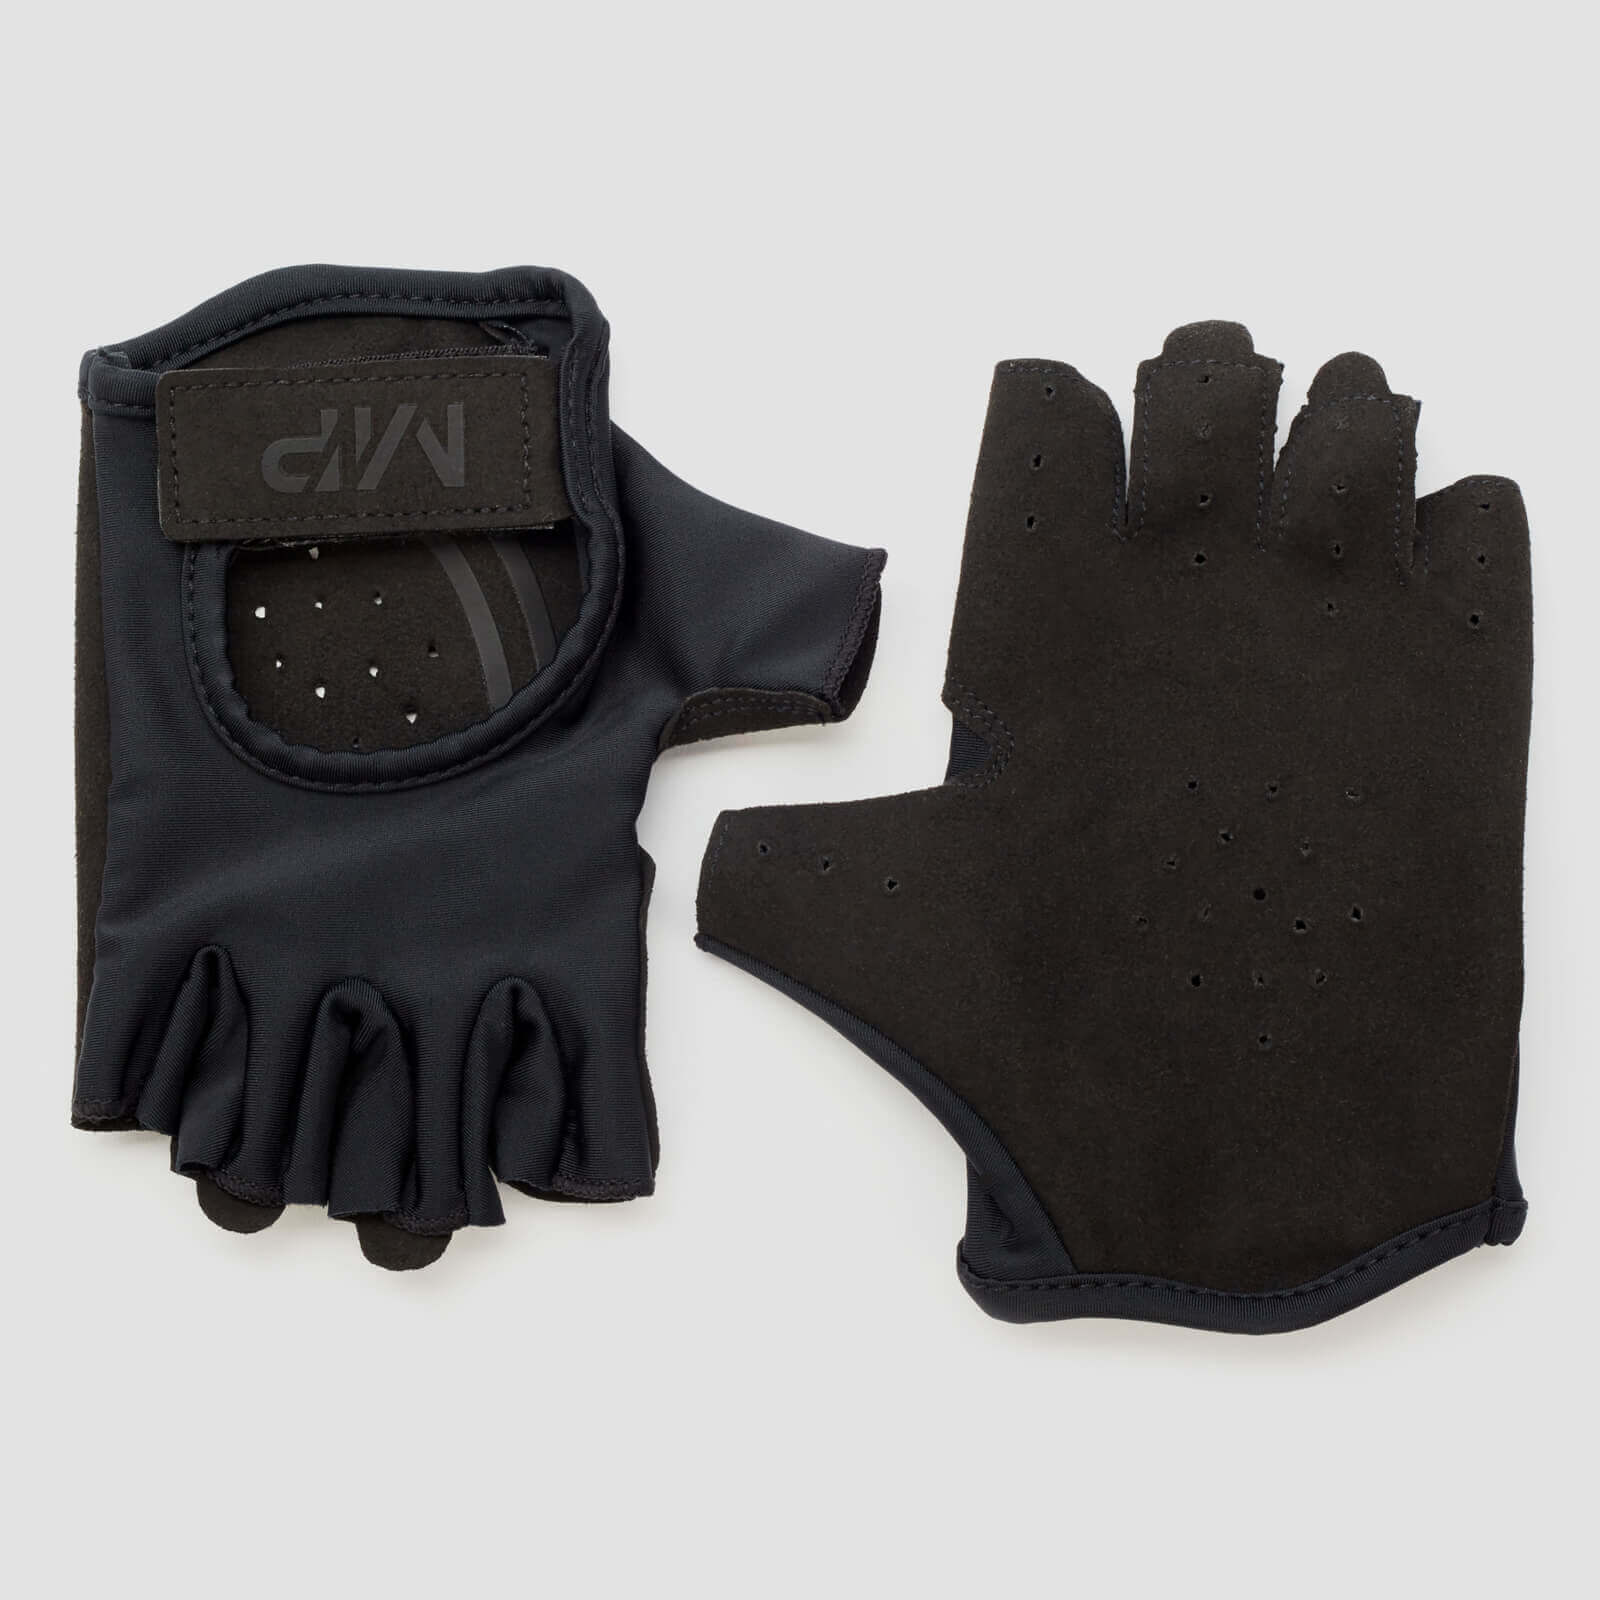 MP Men's Lifting Gloves -käsineet - Musta - S - Musta